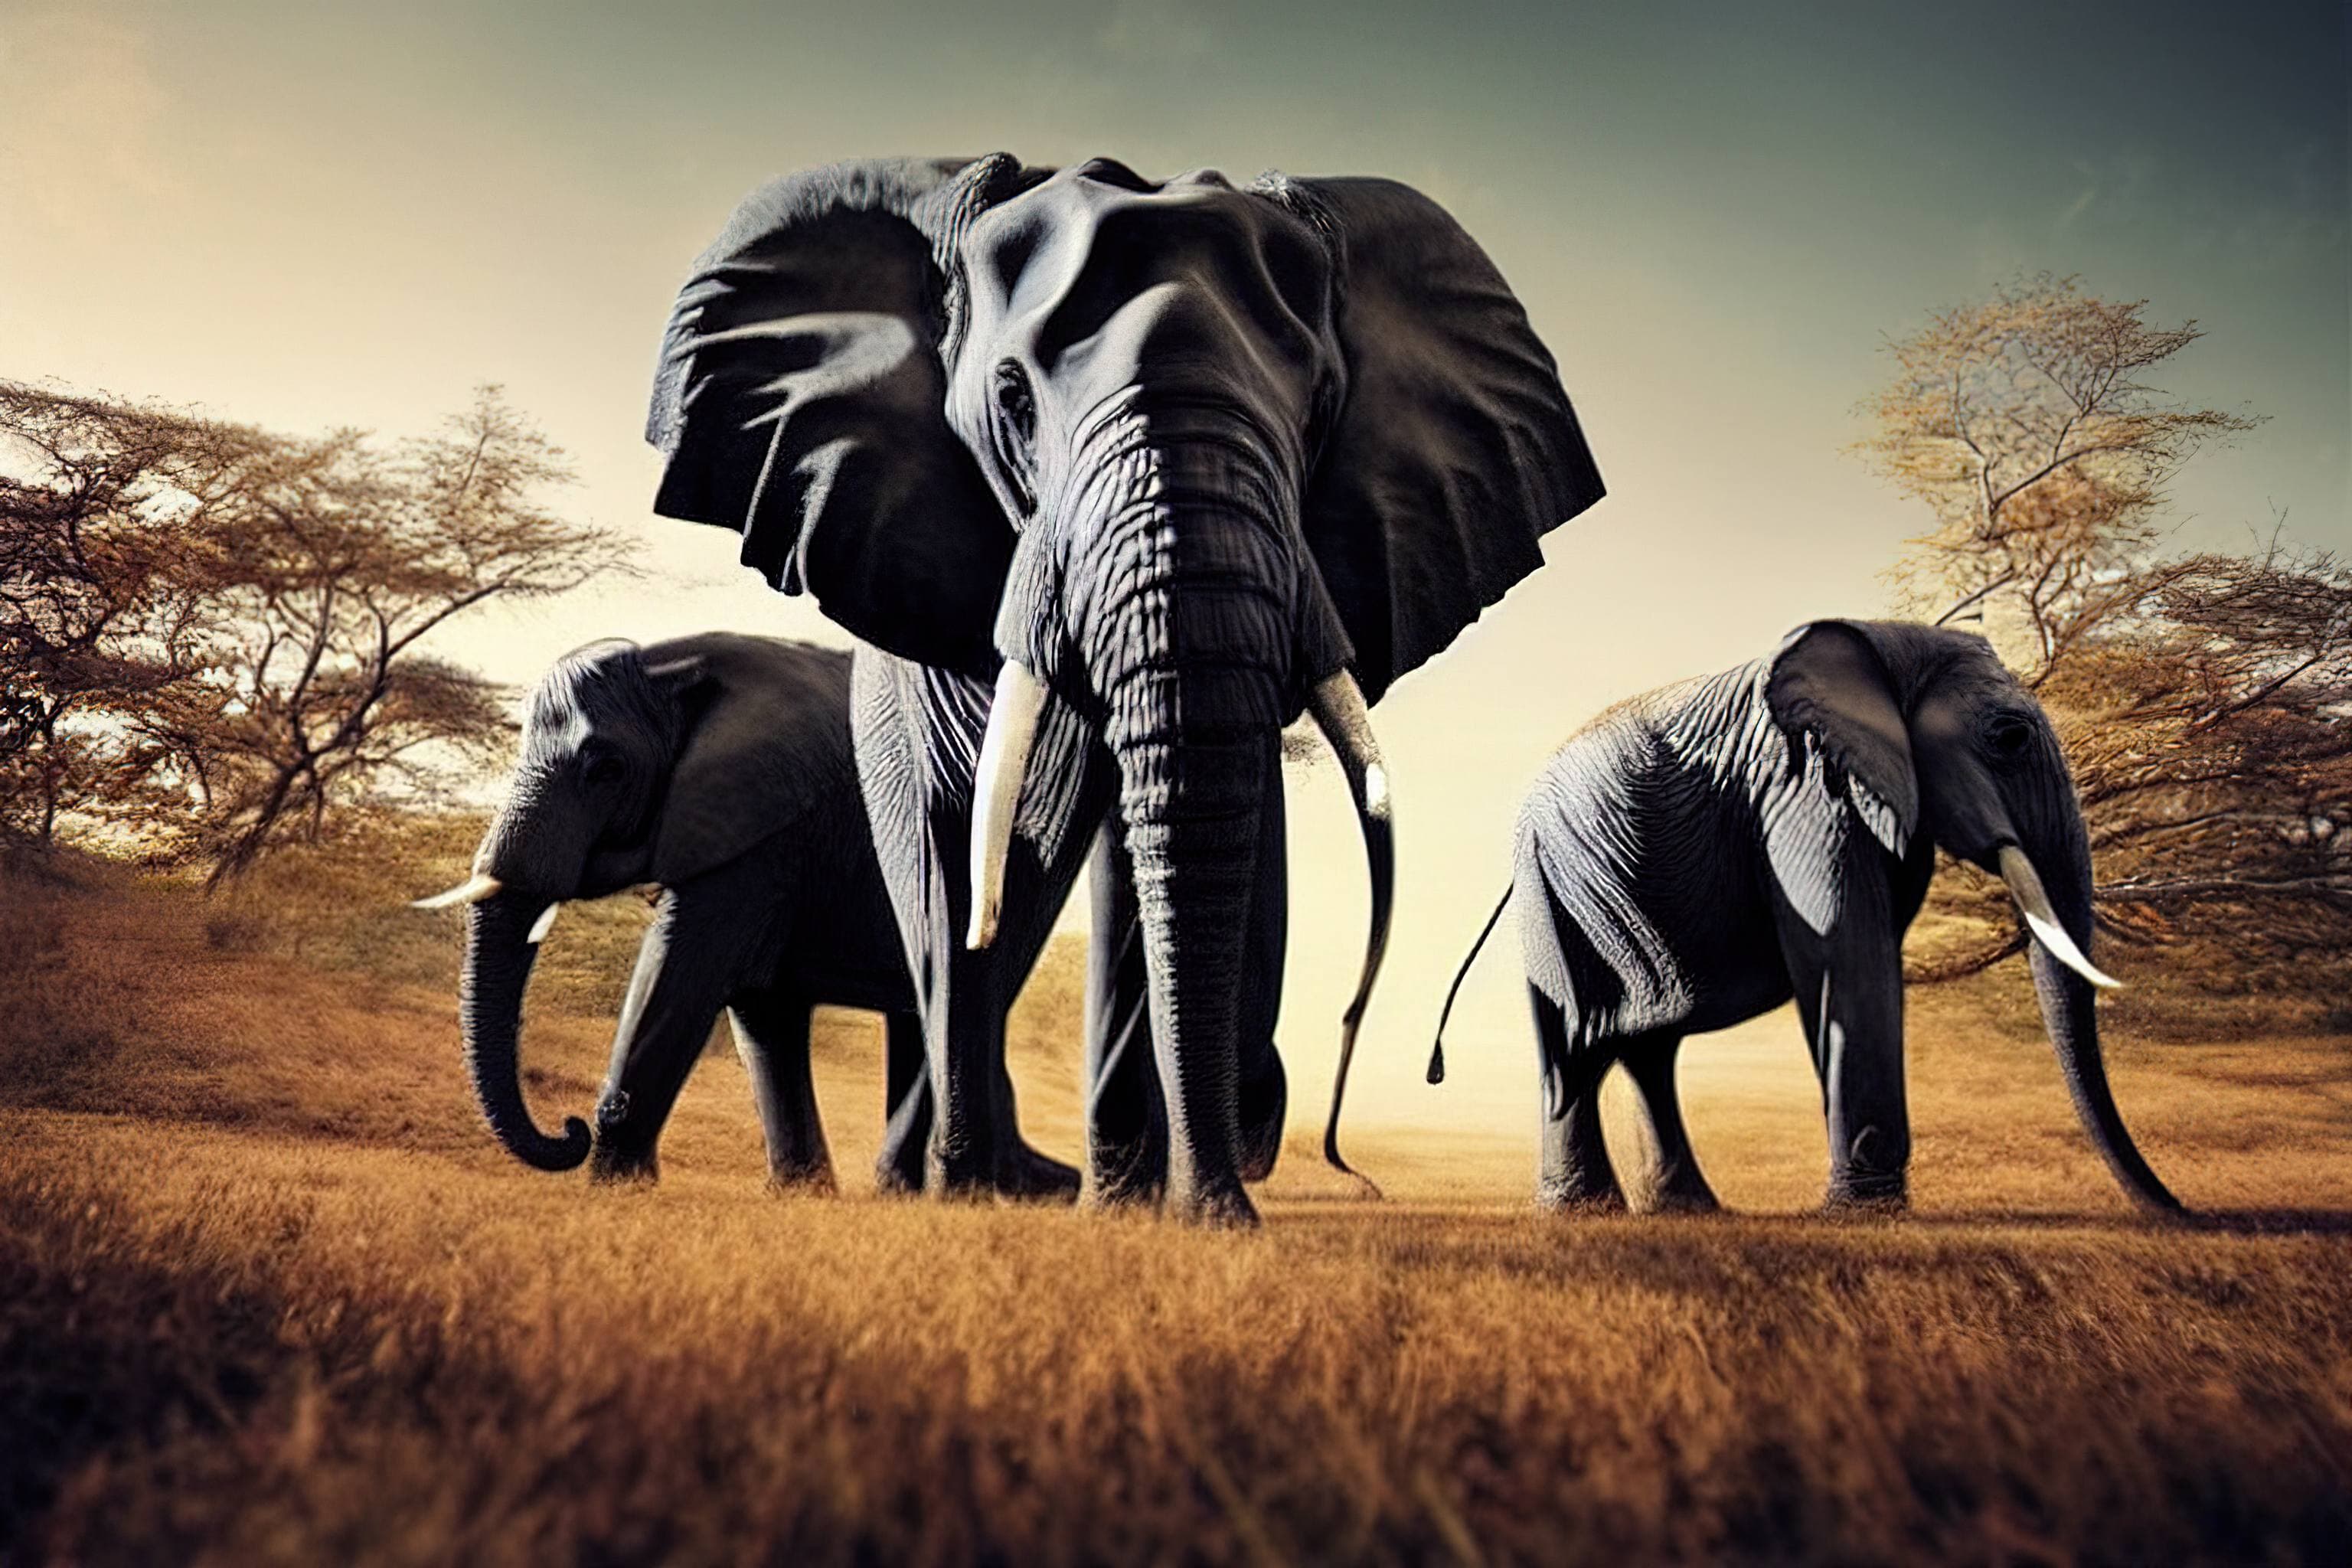 A group of elephants walking in a field